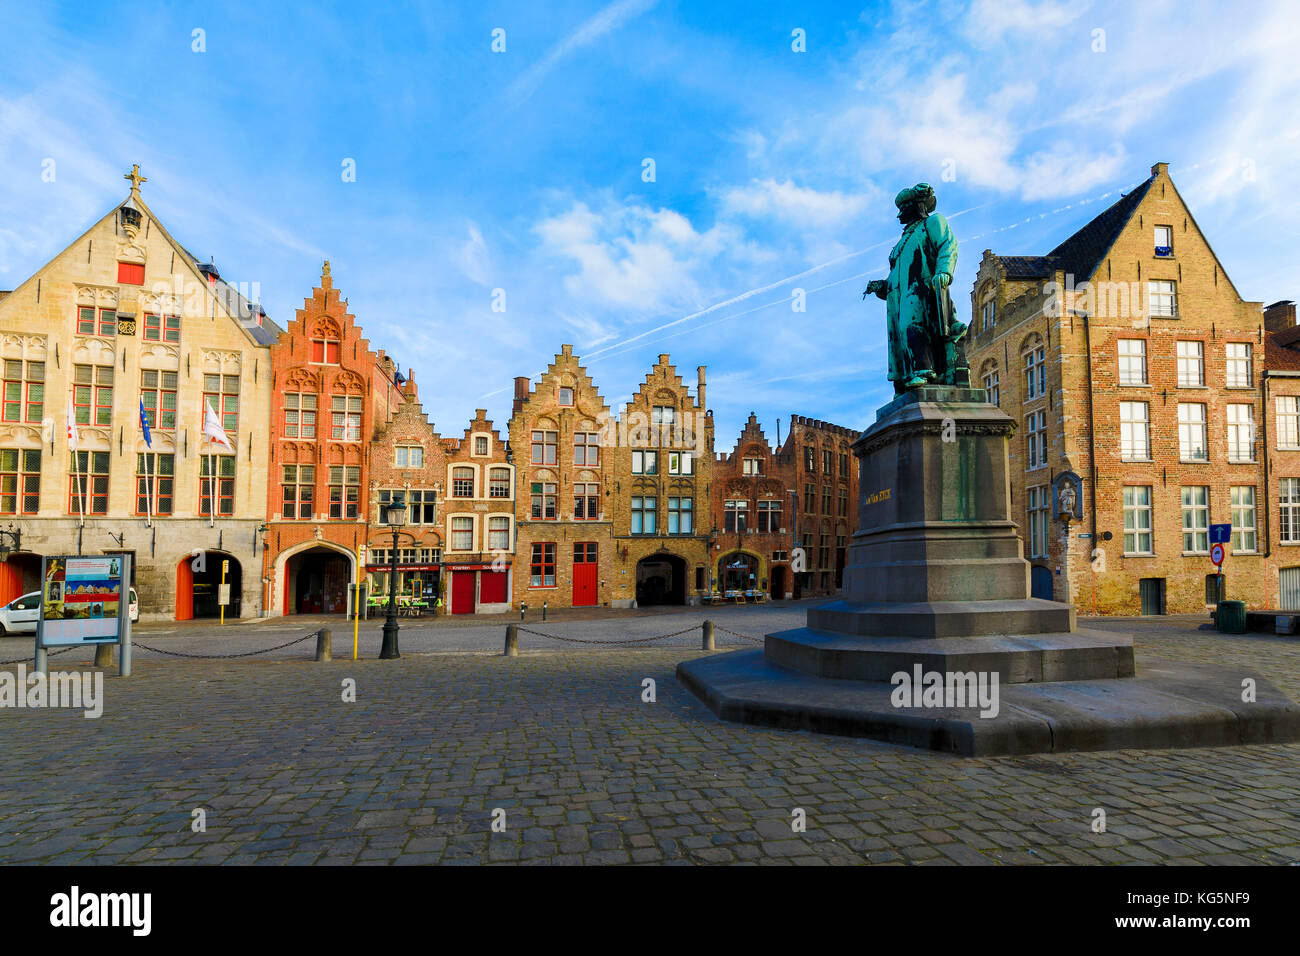 Ancienne statue dans la place médiévale encadrée par les maisons typiques et les bâtiments à l'aube Bruges Flandre occidentale belgique europe Banque D'Images